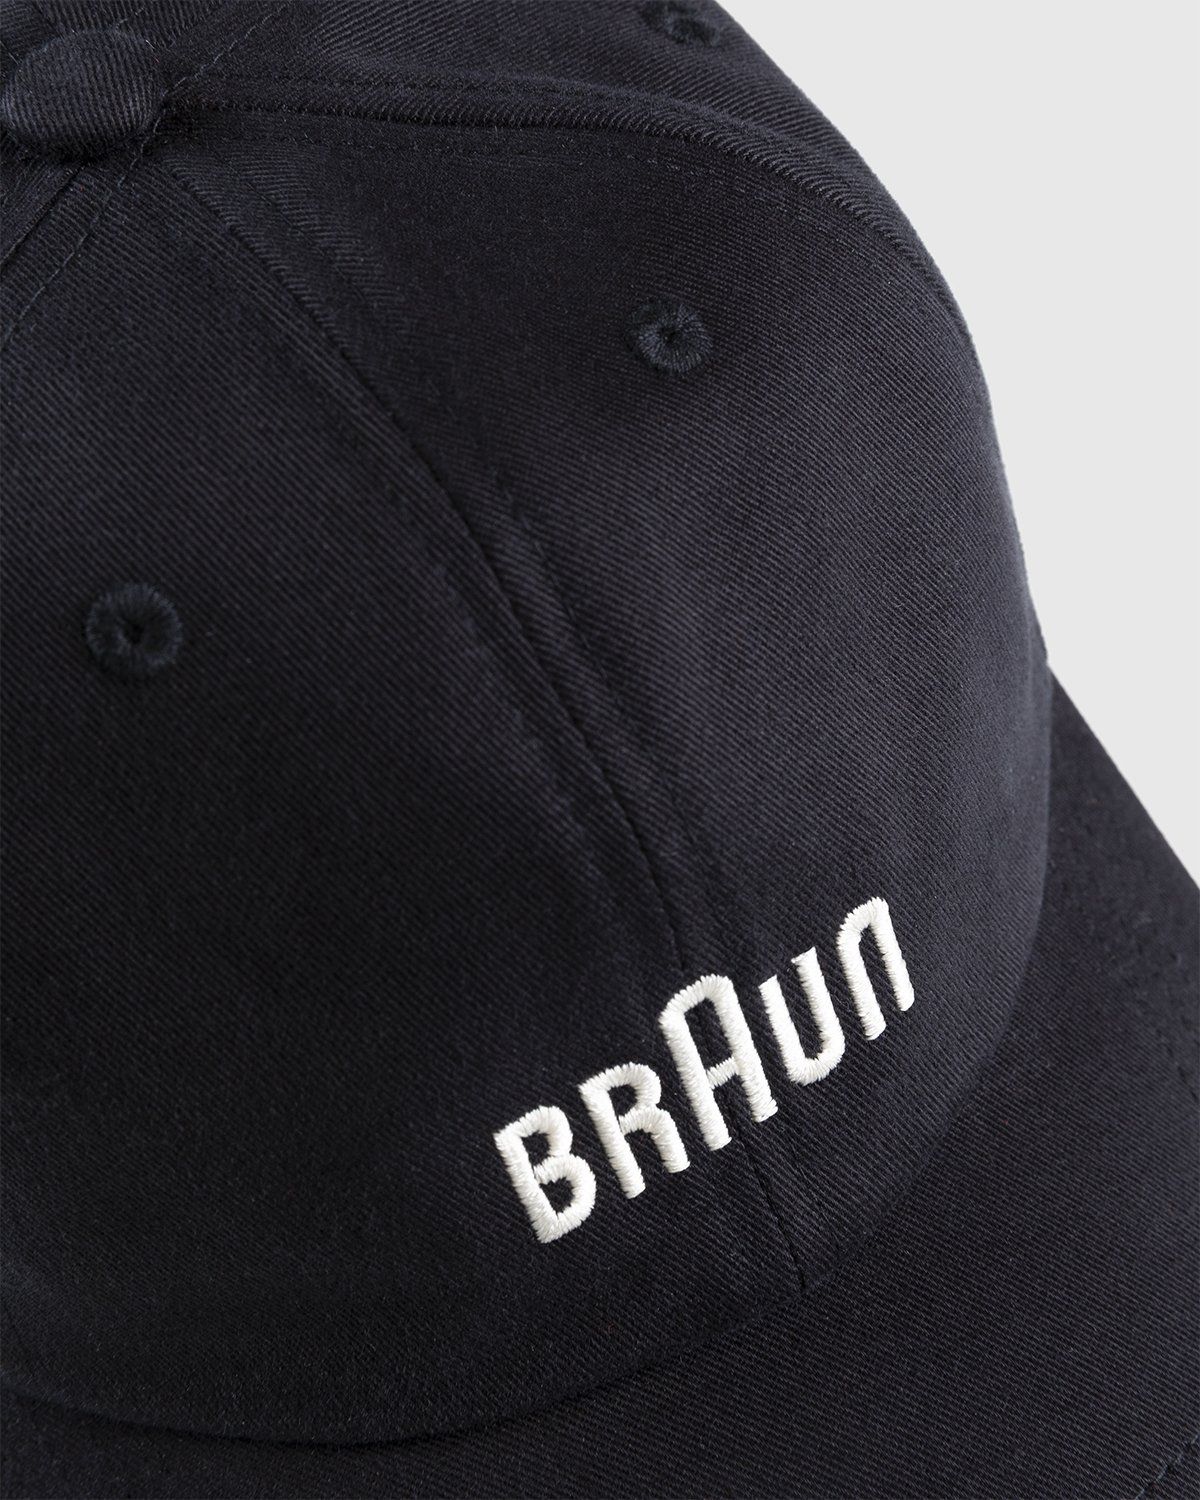 BRAUN x Highsnobiety – Logo Cap Black | Highsnobiety Shop